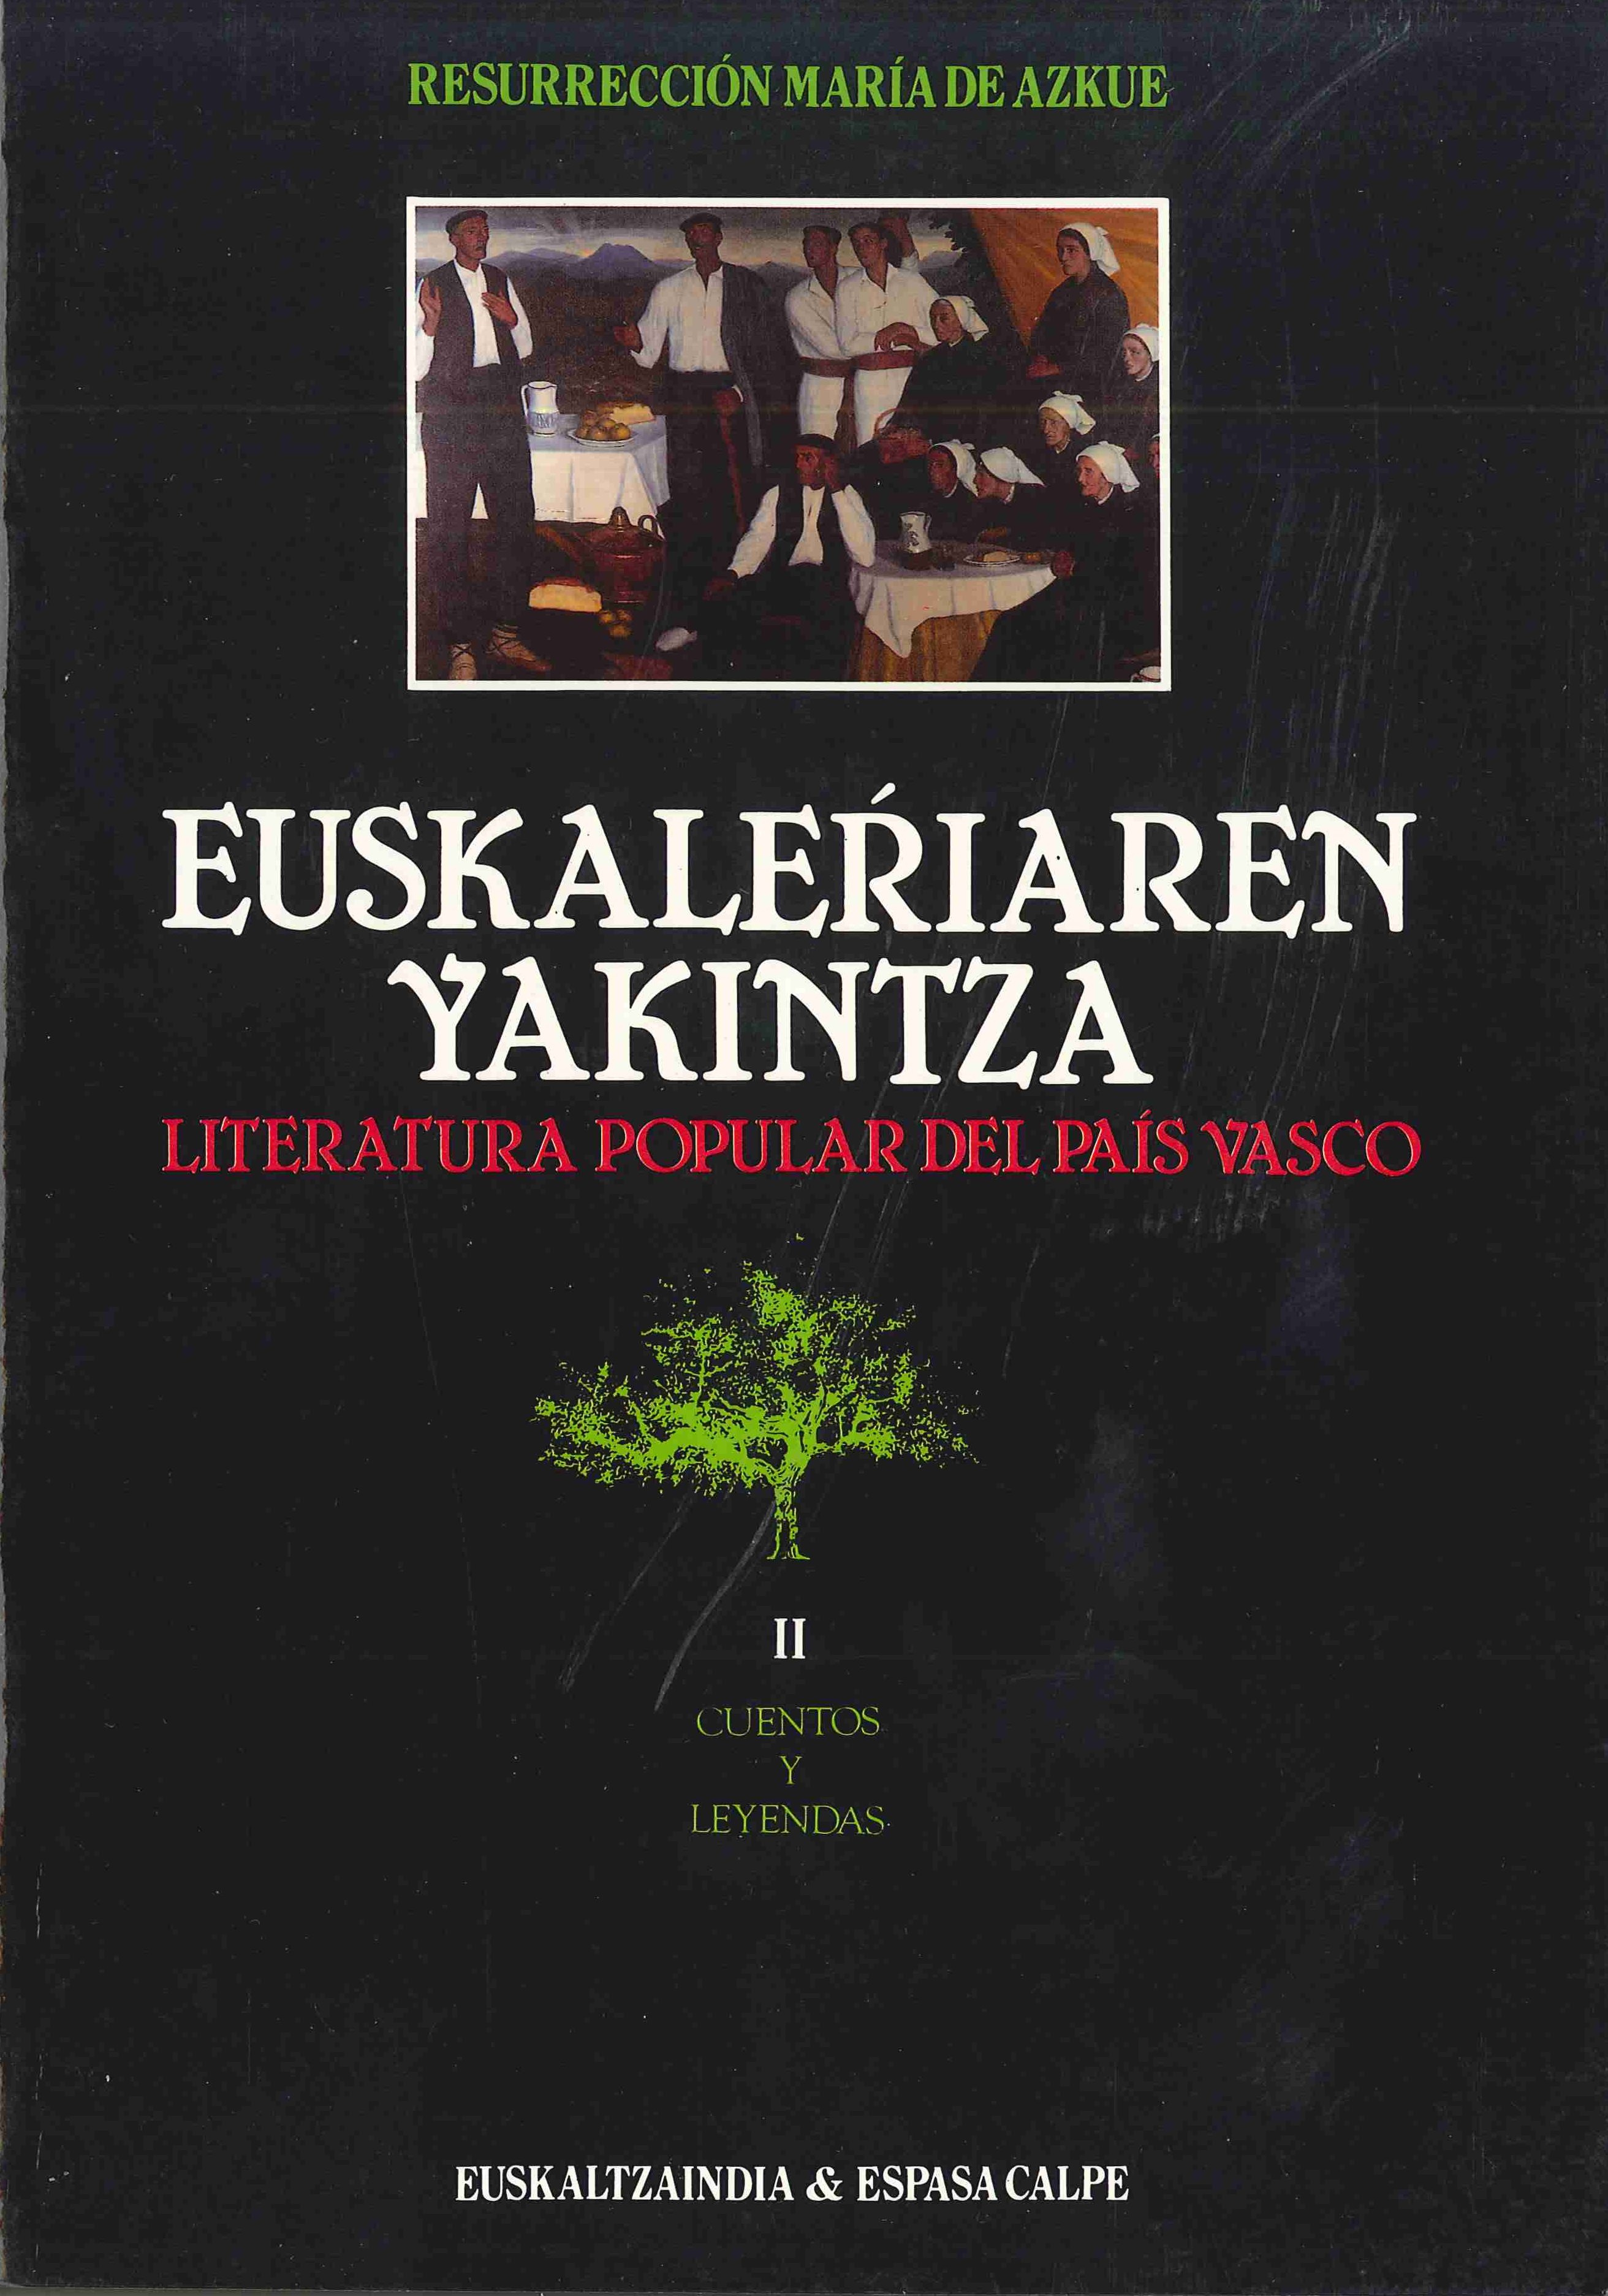 Euskalerriaren Yakintza, I, II, III, IV